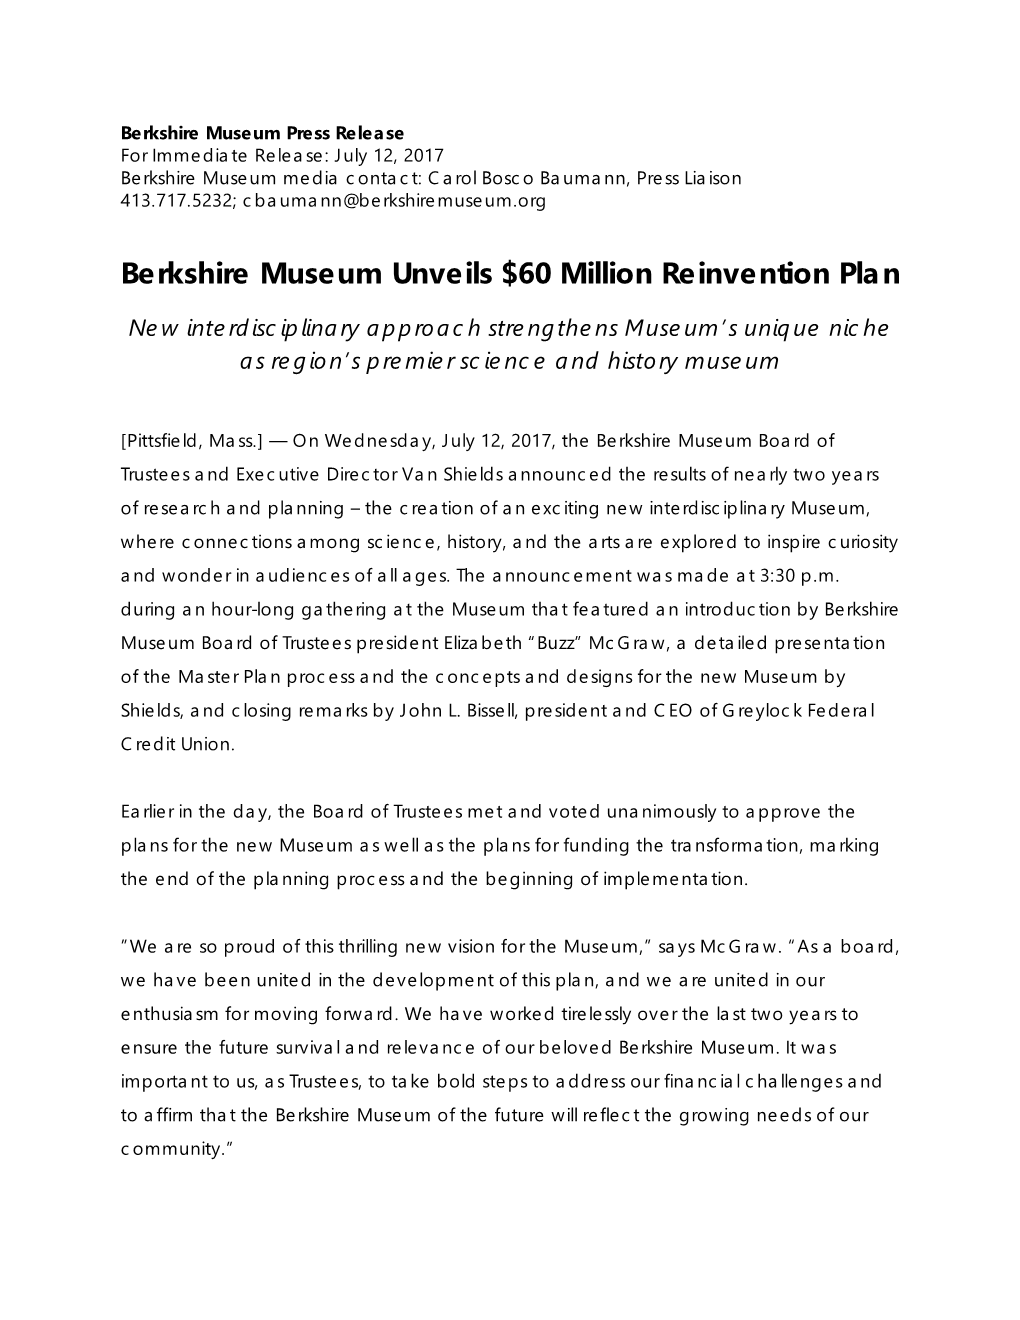 Berkshire Museum Unveils $60 Million Reinvention Plan